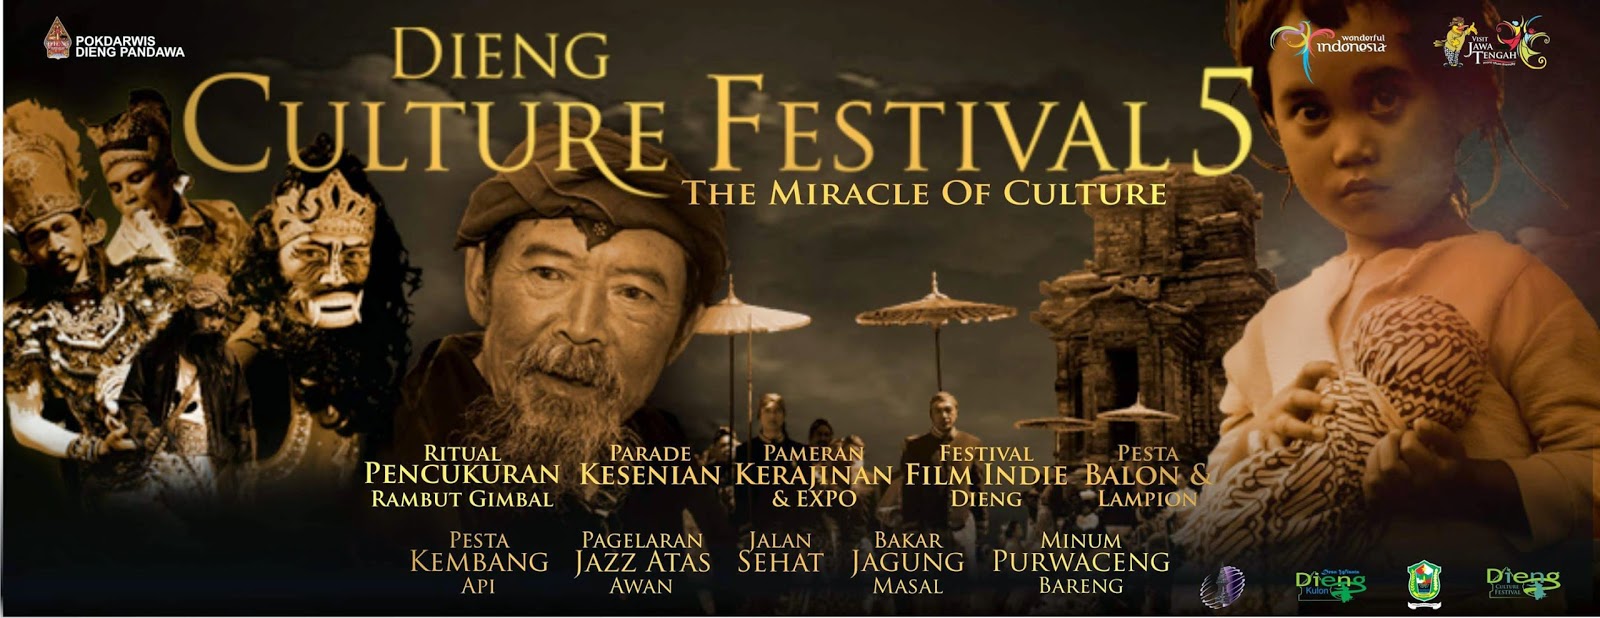 Dieng Culture Festival 5 2014